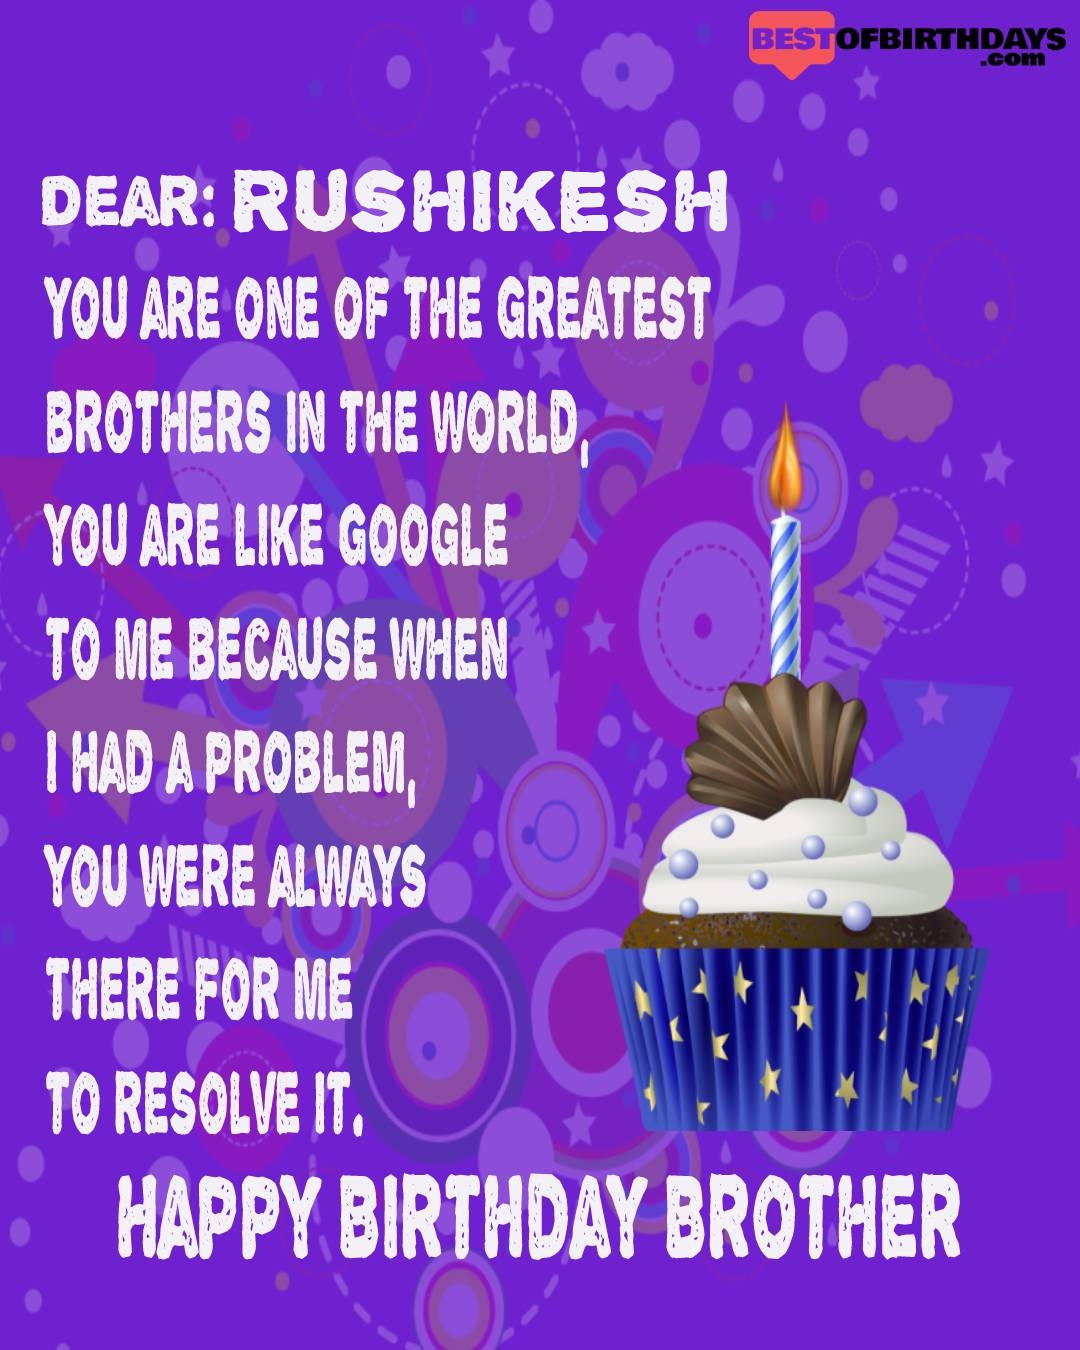 Happy birthday rushikesh bhai brother bro